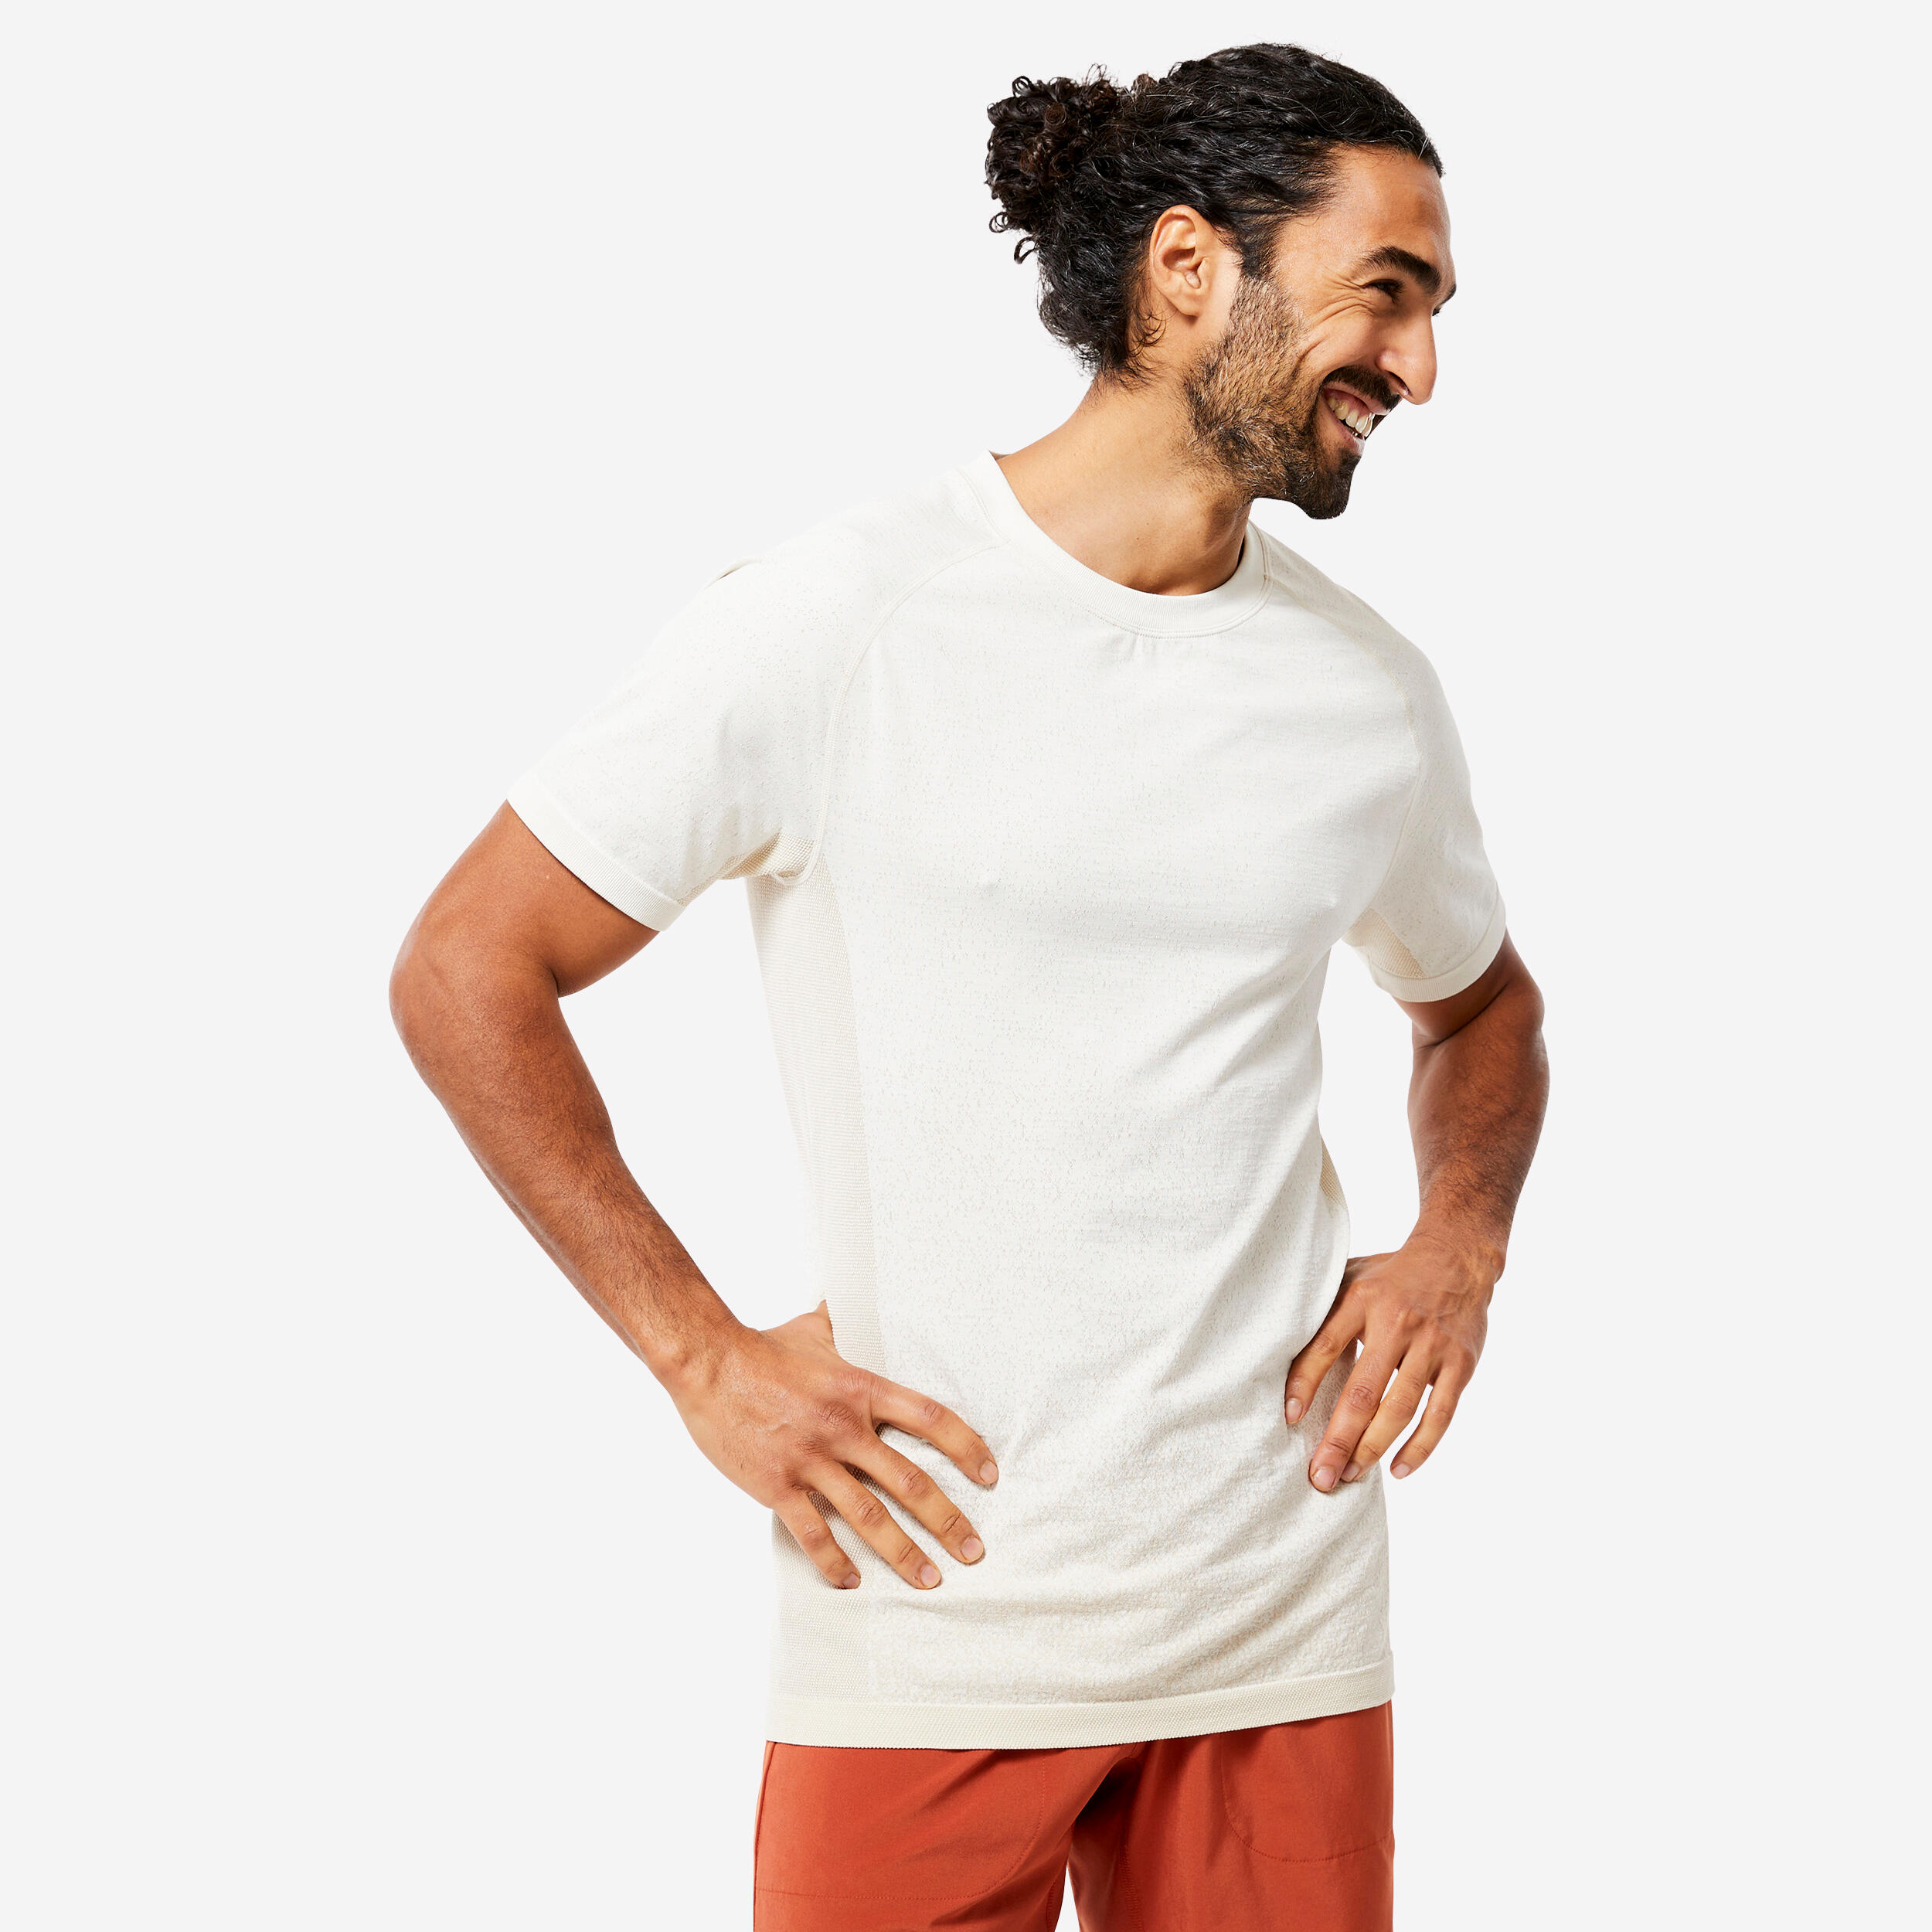 Men's Seamless Short-Sleeved Dynamic Yoga T-Shirt - White KIMJALY